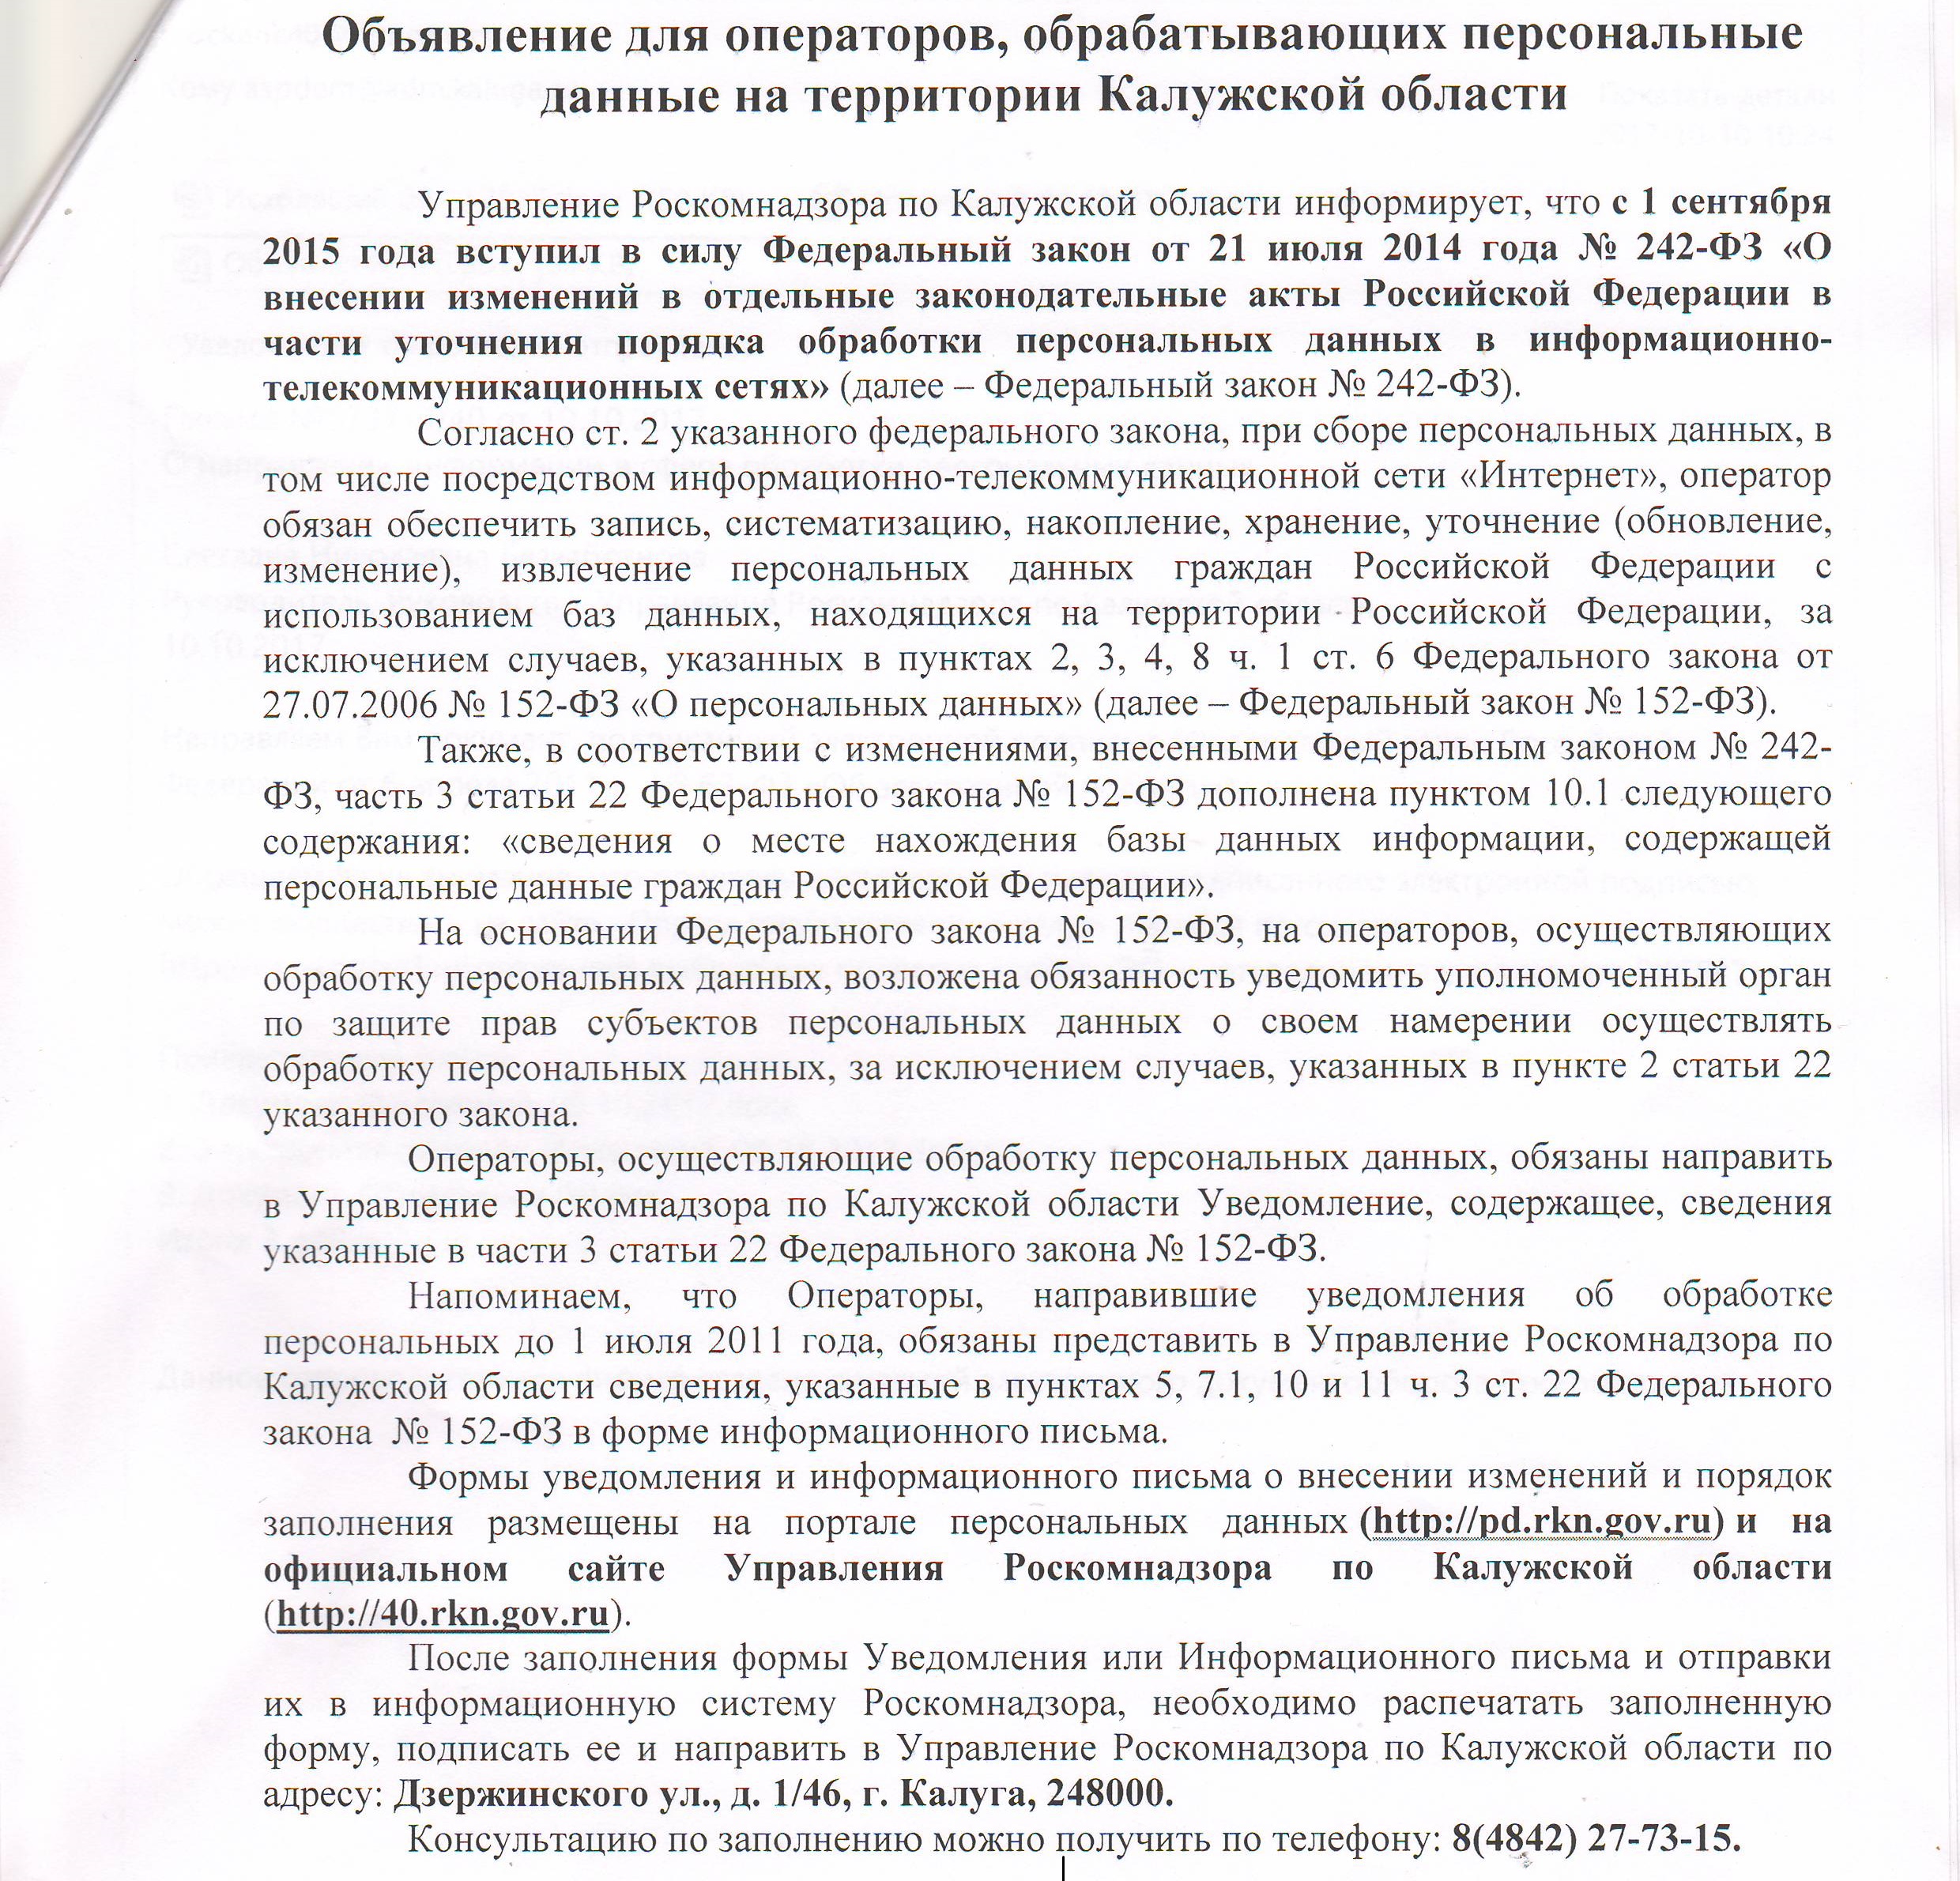 Объявление для операторов, обрабатывающие персональных данные на территории Калужской области.